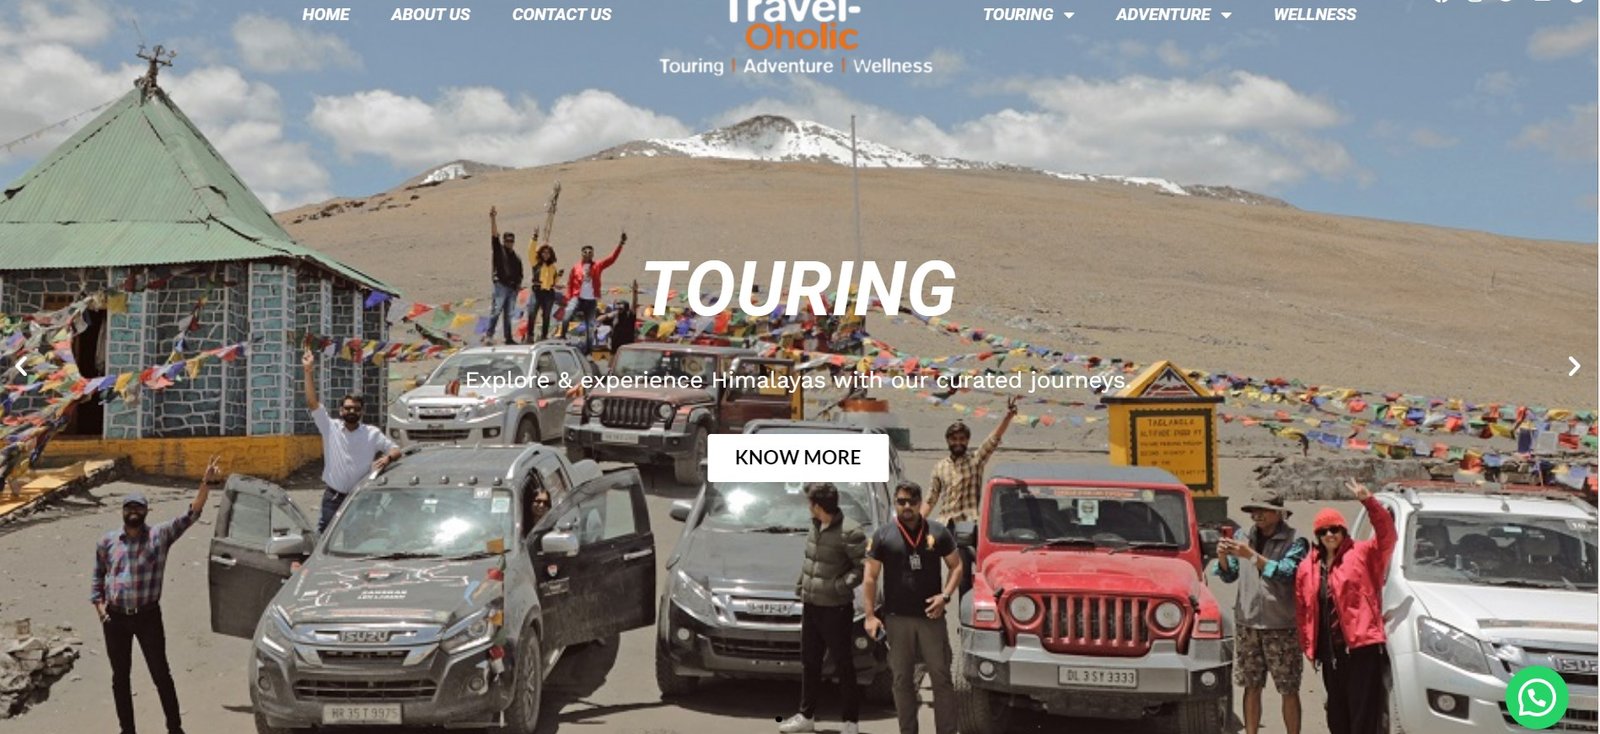 traveloholicadventures.com